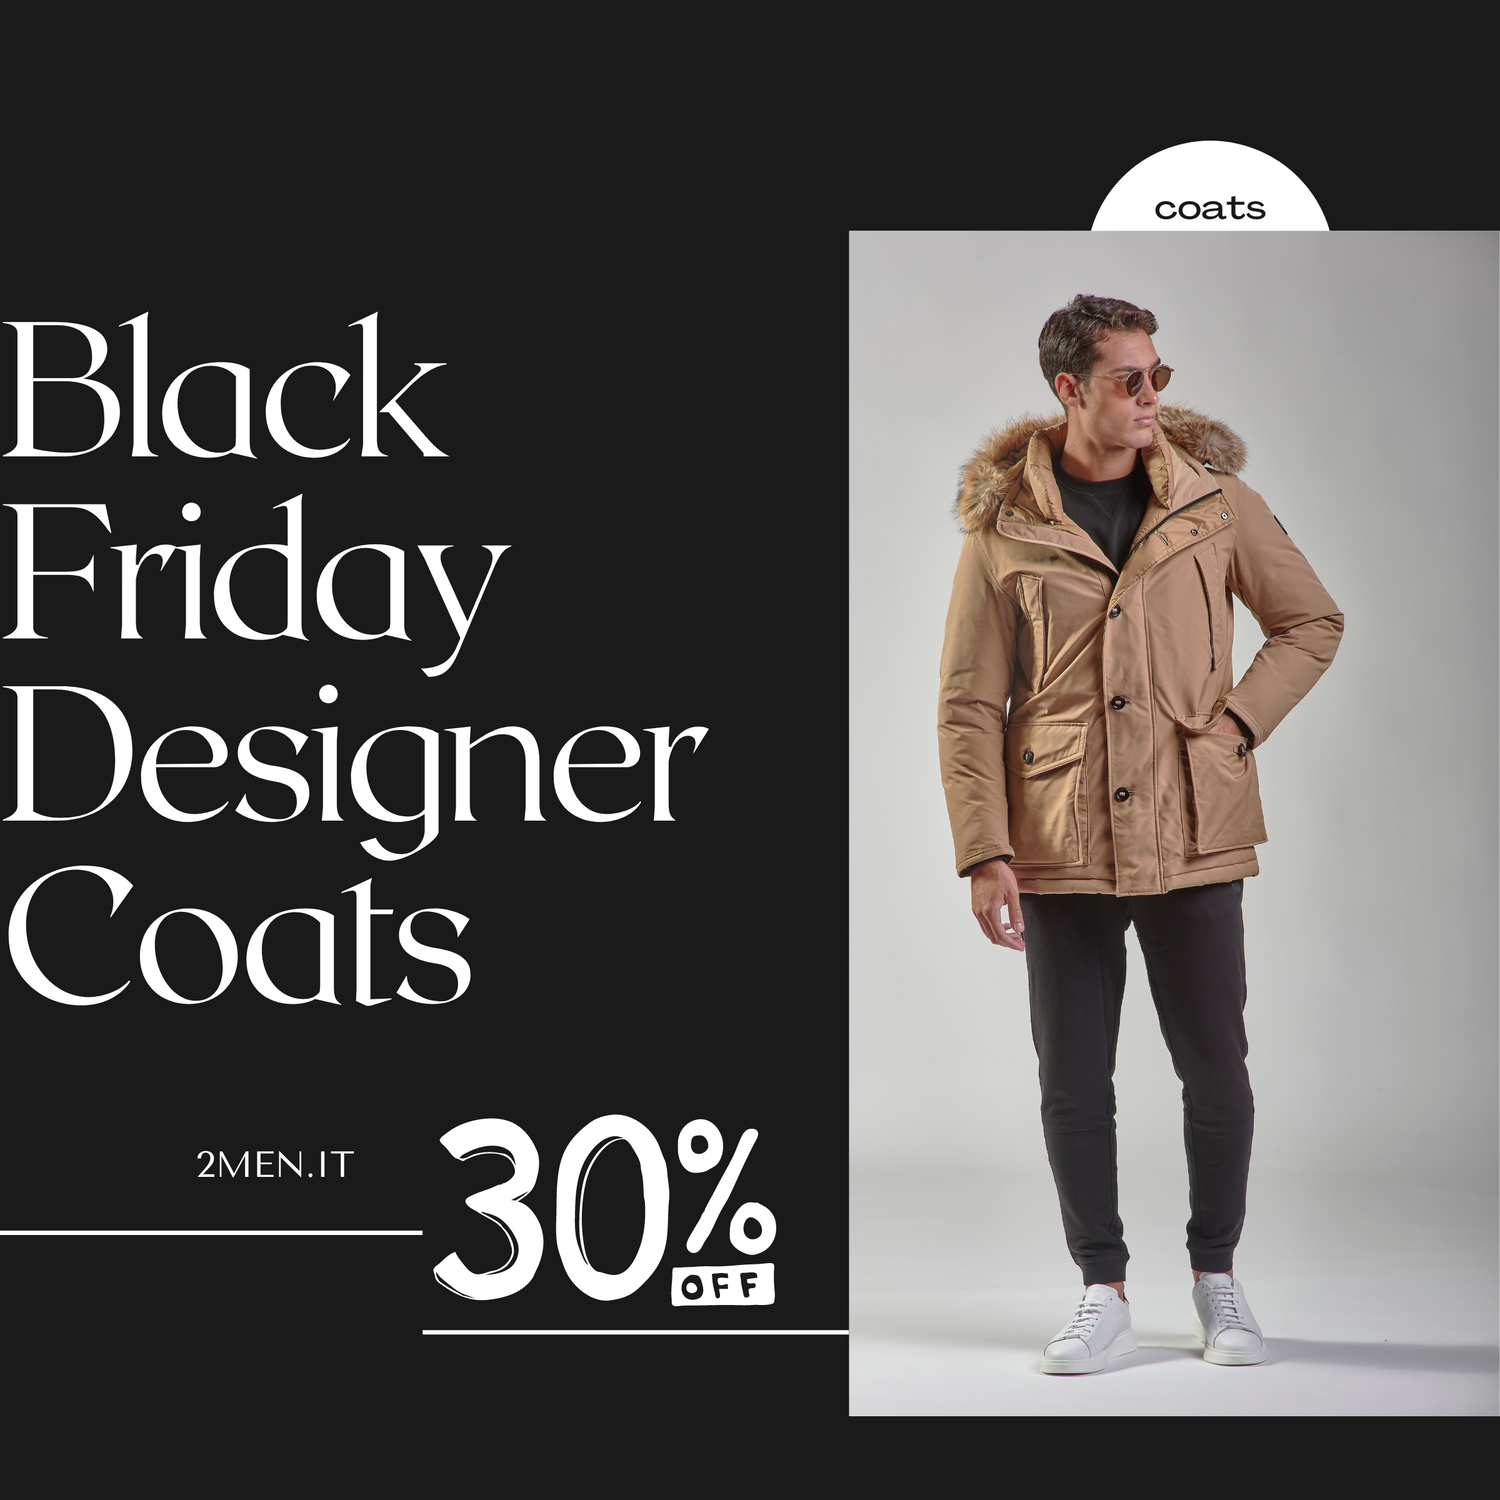 Best Black Friday Italian Winter Coat Deals FOR MEN - 30% OFF SALE